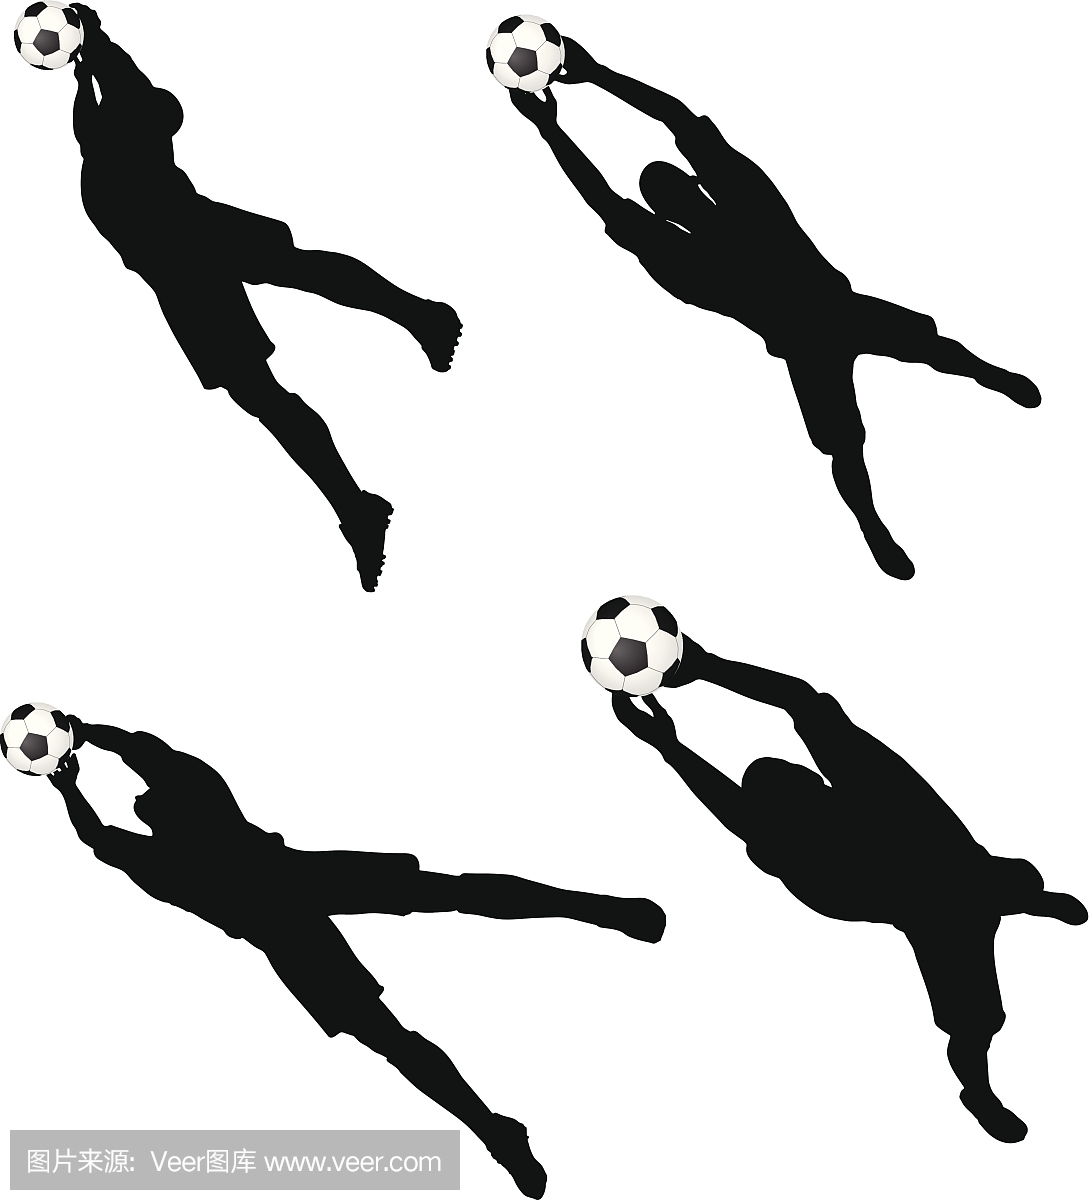 姿势的足球运动员轮廓在空气跳跃的位置